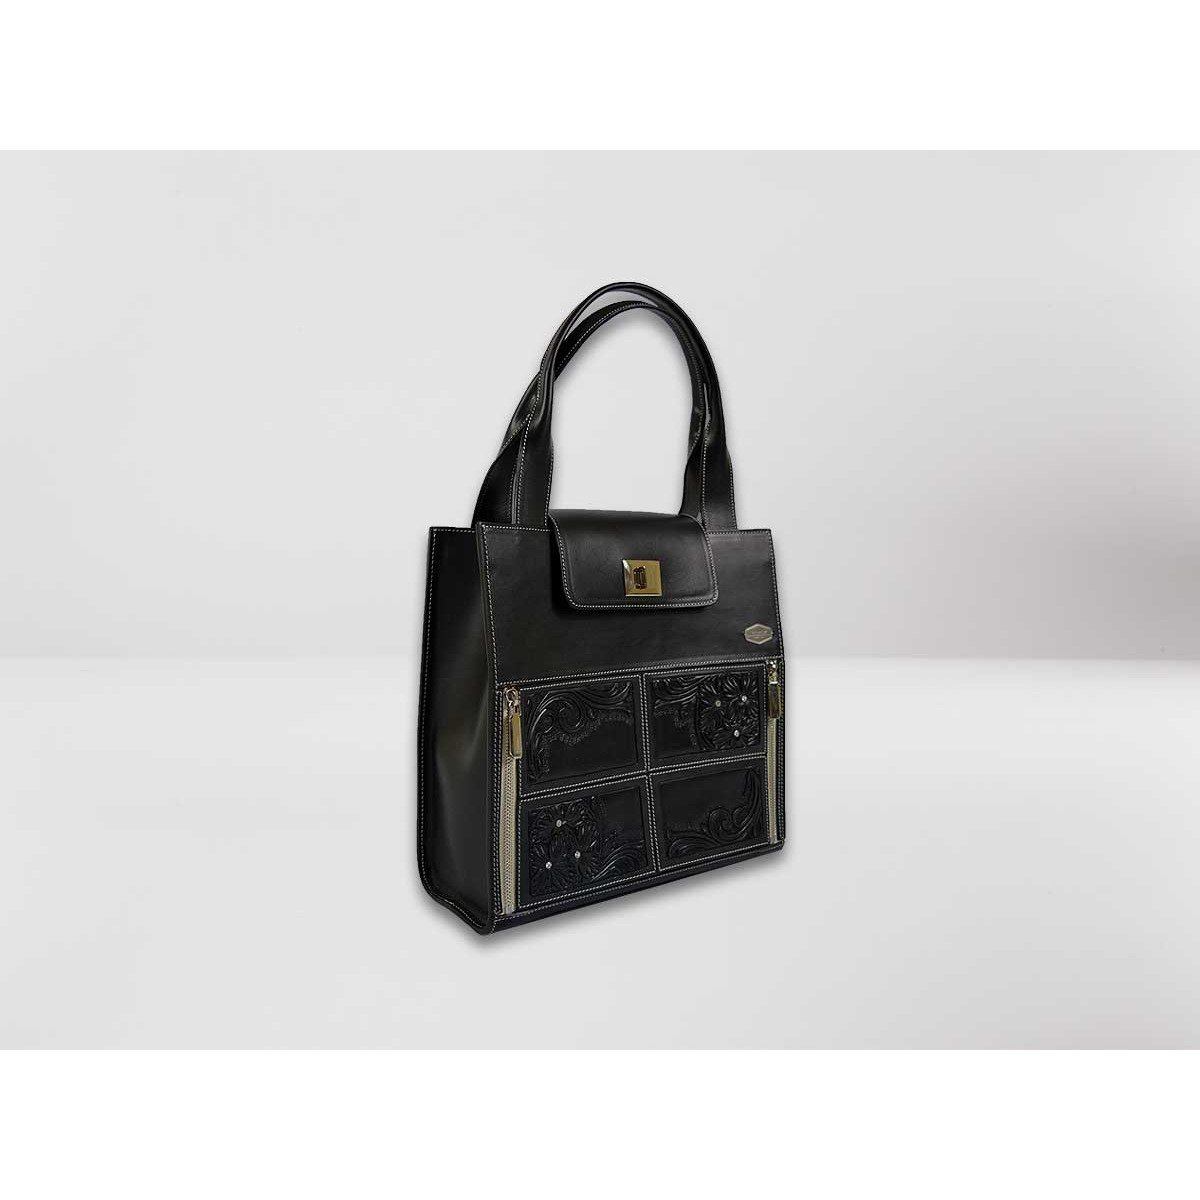 Constancia Made in Italy Women Handbag Shopping and Shoulder Bag